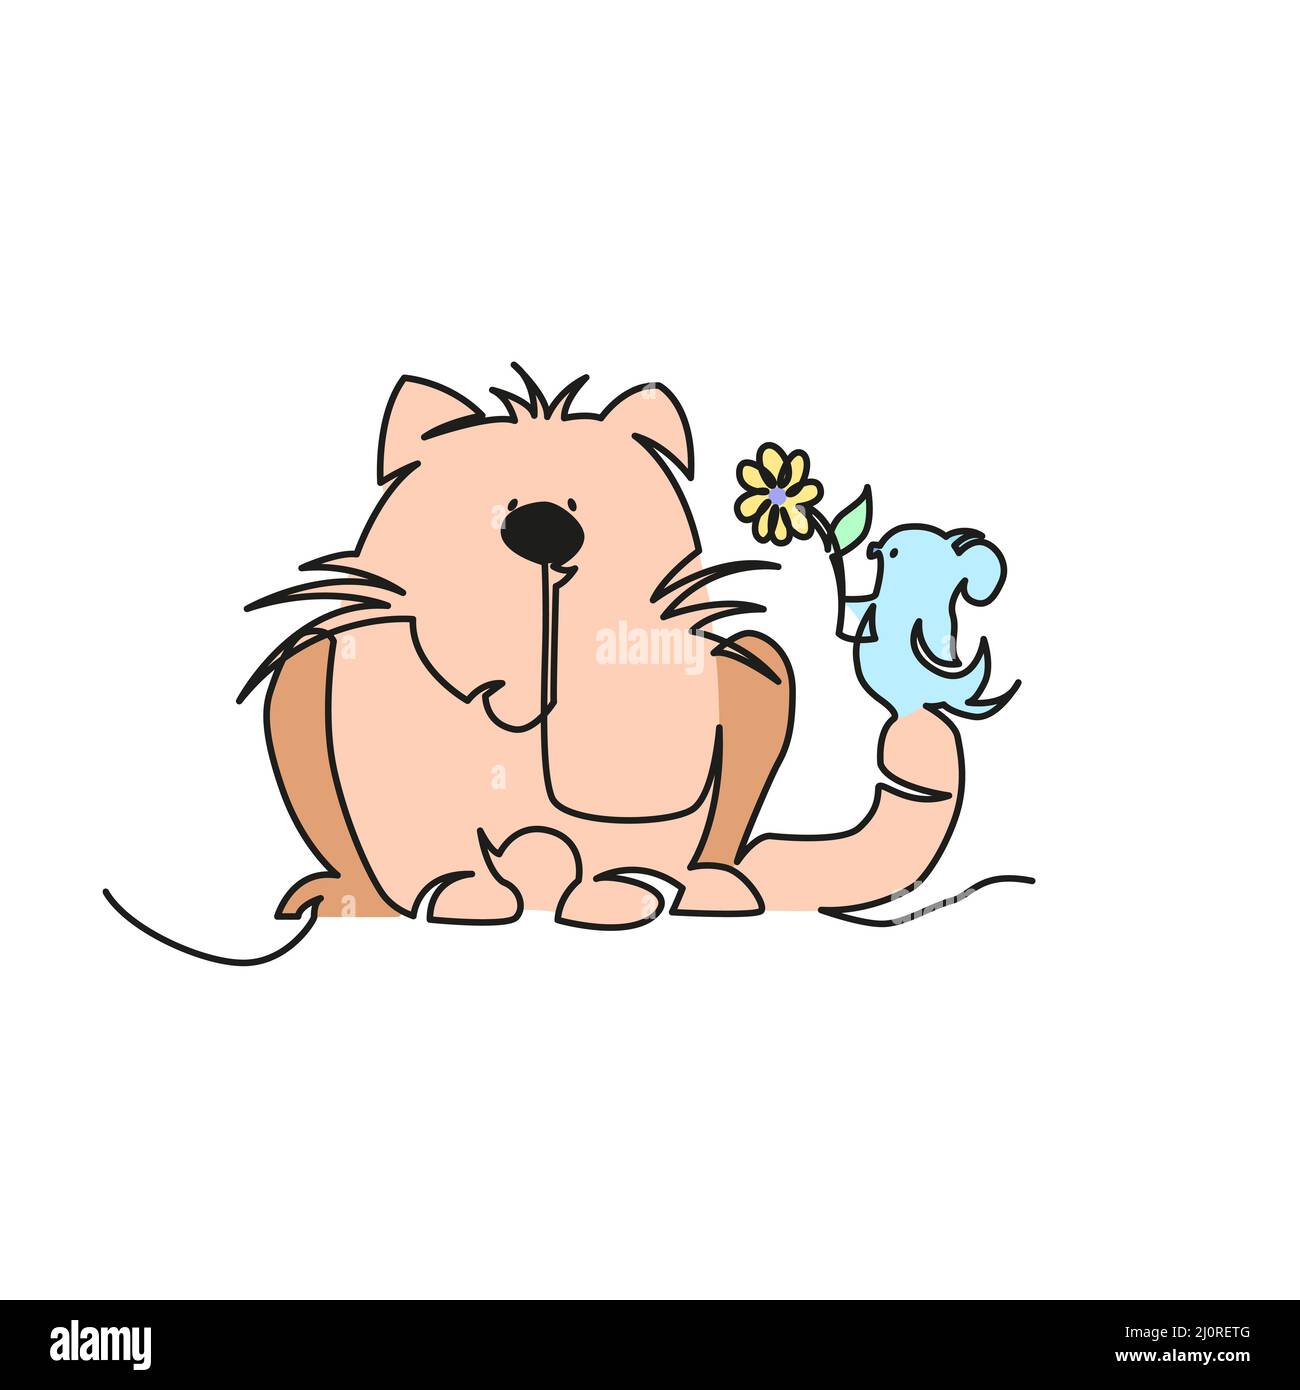 Kleine Maus gibt einer Katze eine Blume. Kleine Maus und Katze Illustration kontinuierliche Linienzeichnung. Stock Vektor